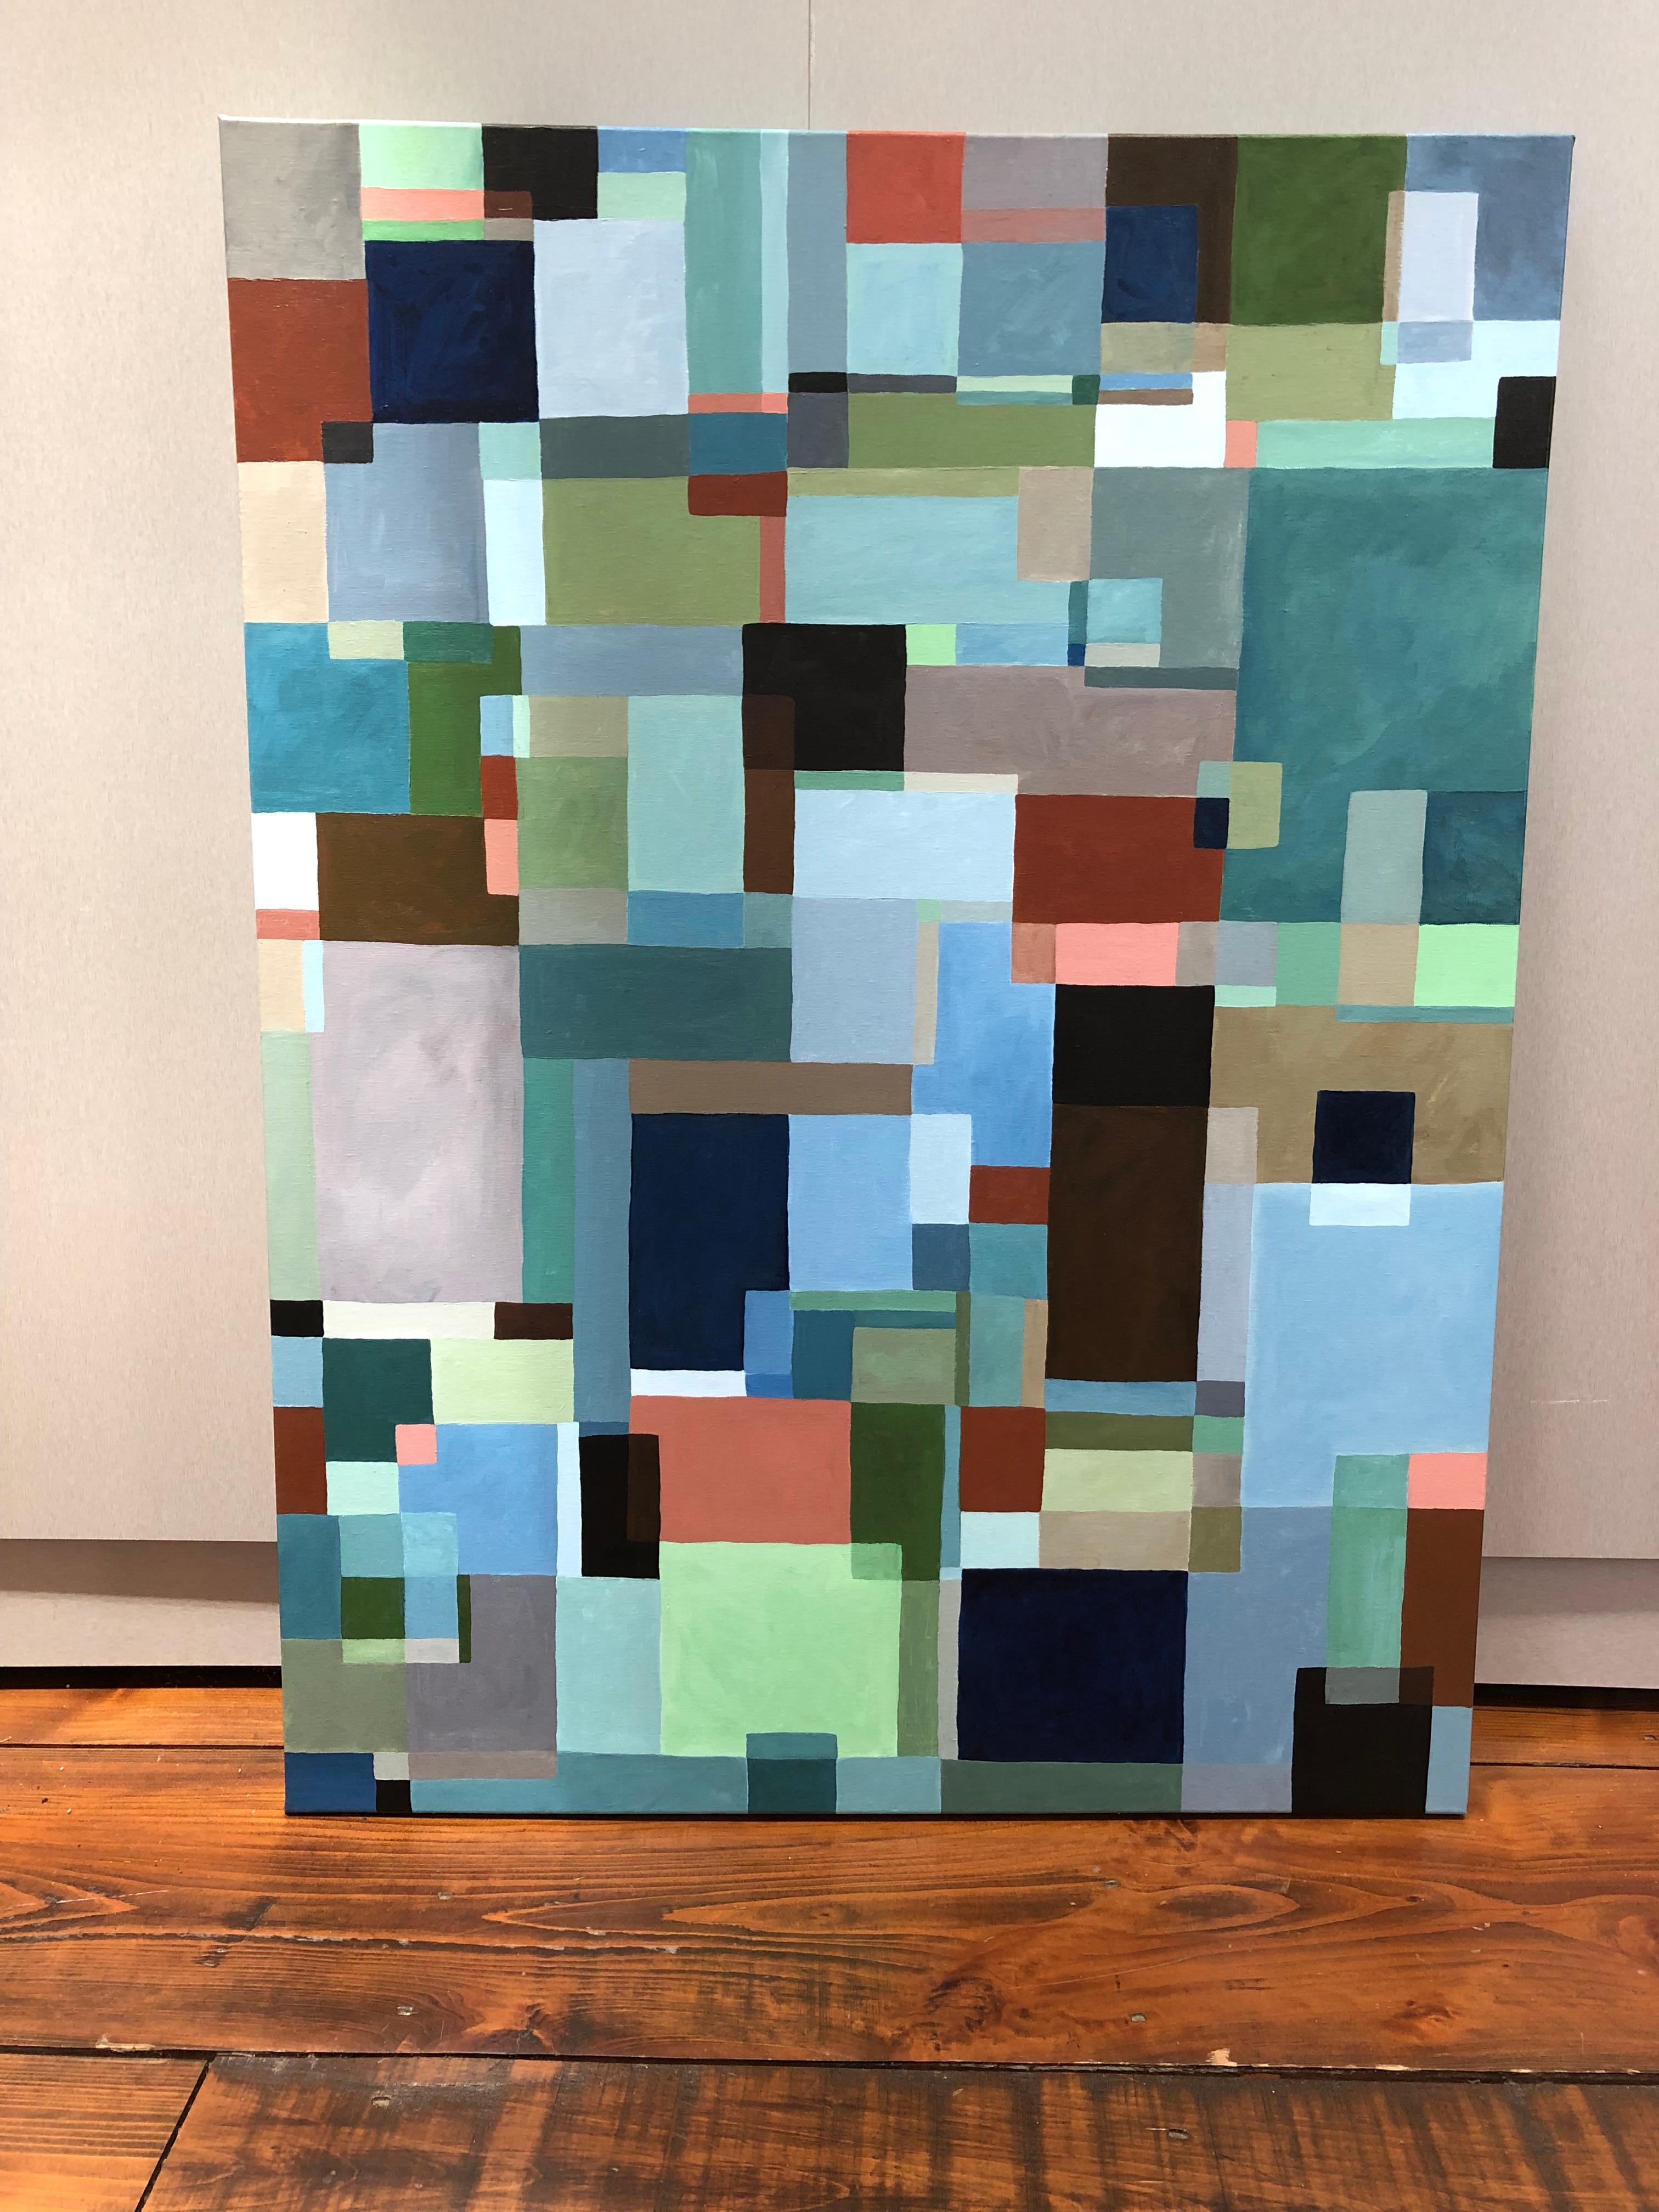 Grande peinture abstraite saisissante avec de multiples couches de rectangles qui se chevauchent et se mélangent dans un jeu mélodique textural. Les couleurs sont sourdes et terreuses, avec du brun, du bleu marine, du noir, du céladon, du bleu de